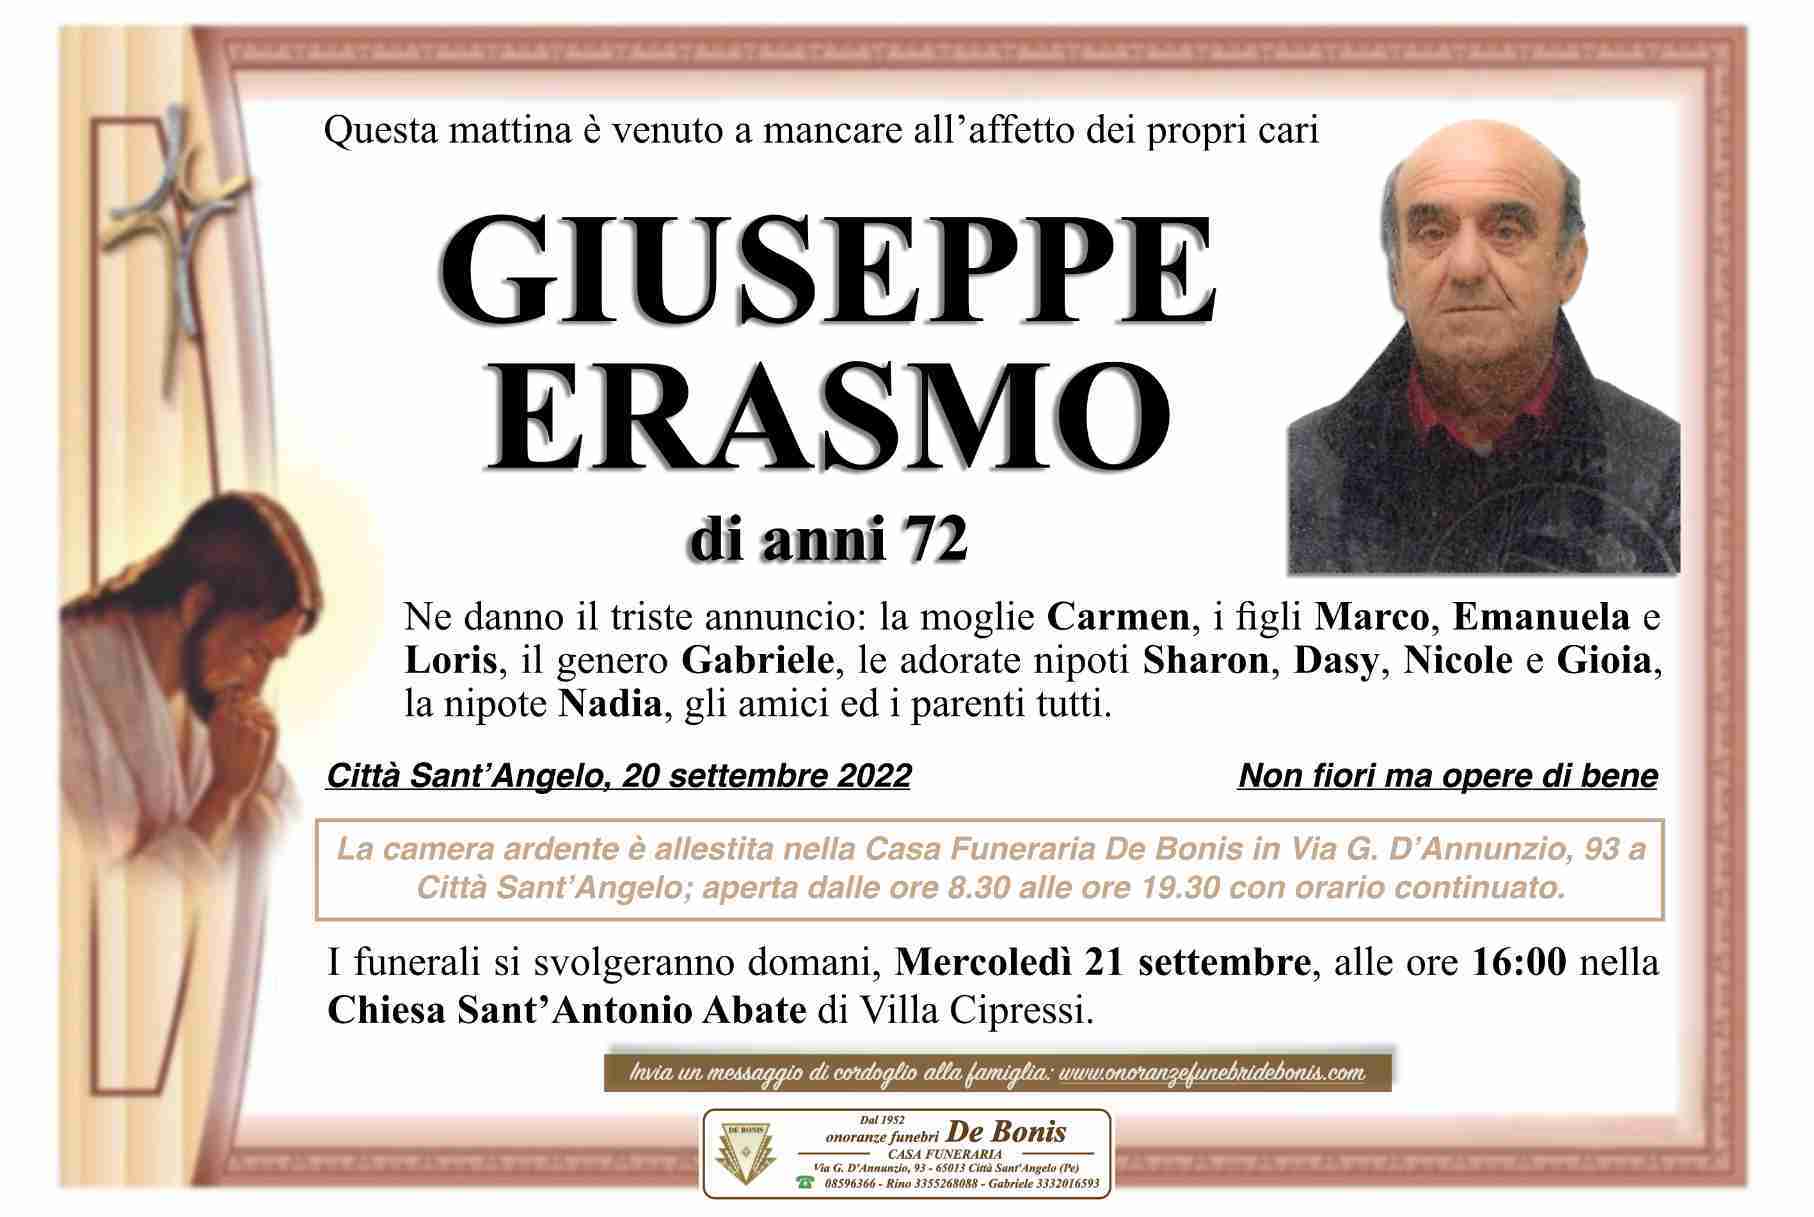 Giuseppe Erasmo